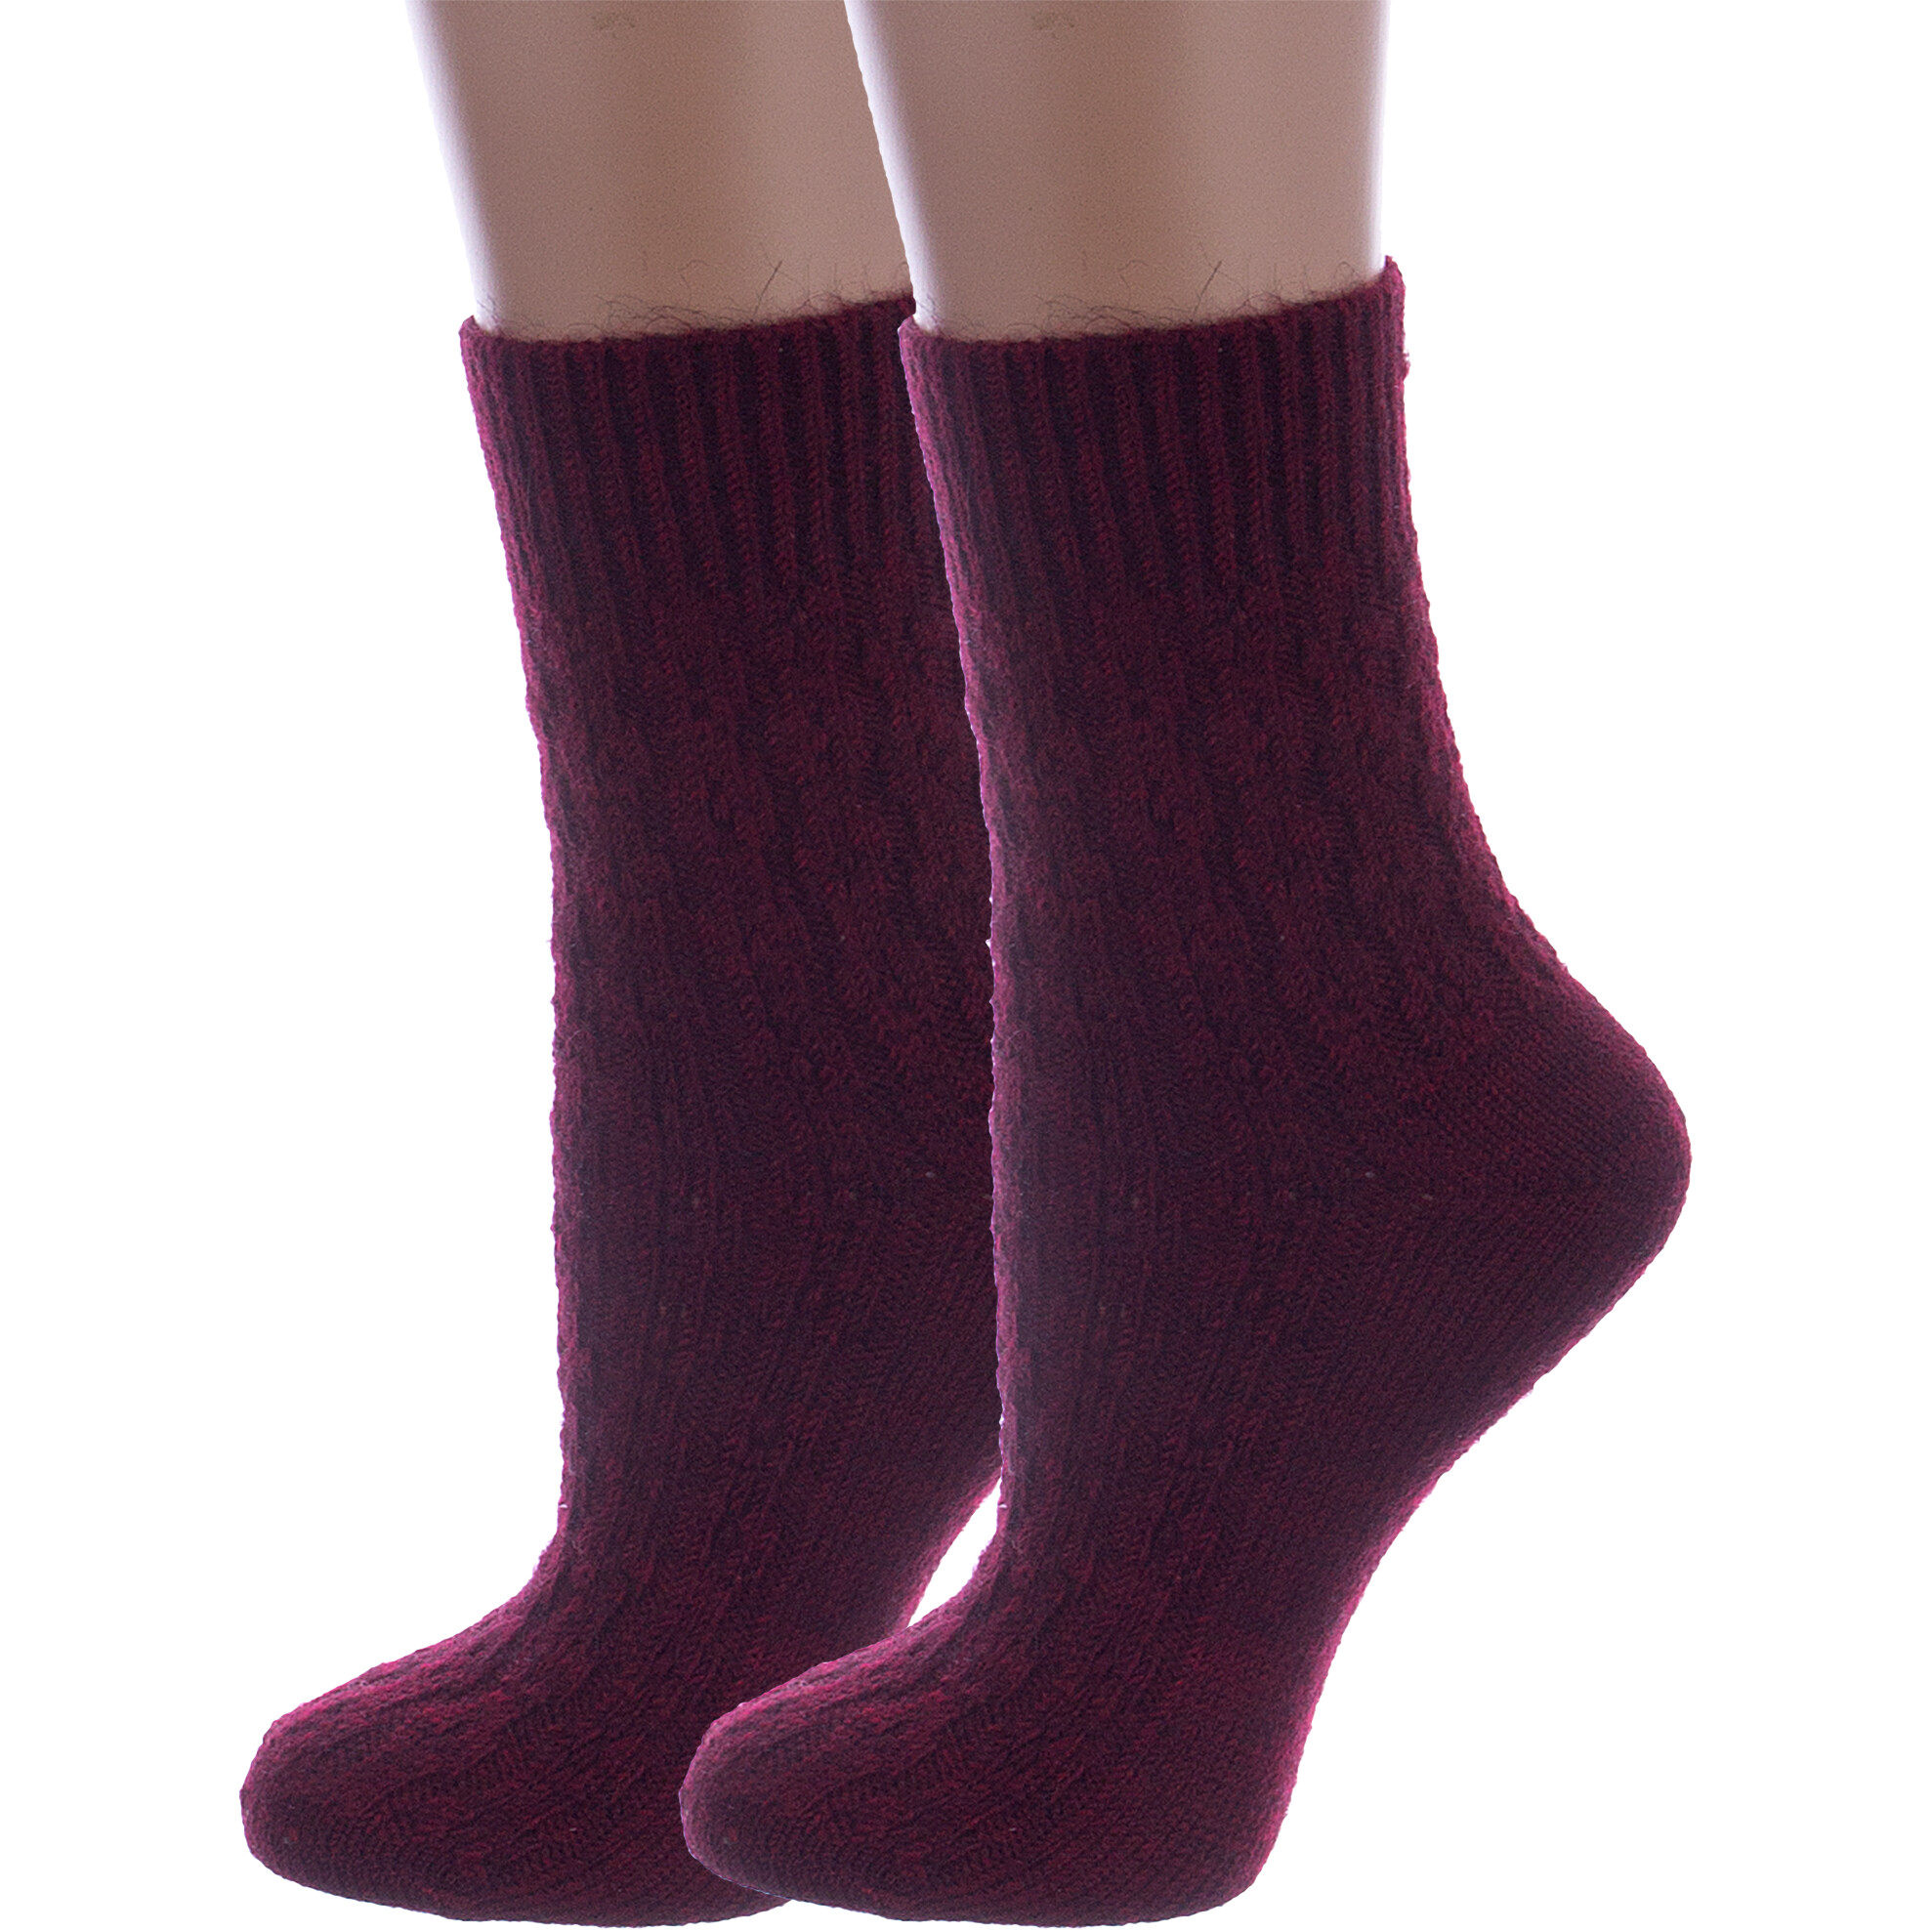 Комплект носков женских Rusocks 2-Ж-185 бордовых 23-25 2 пары